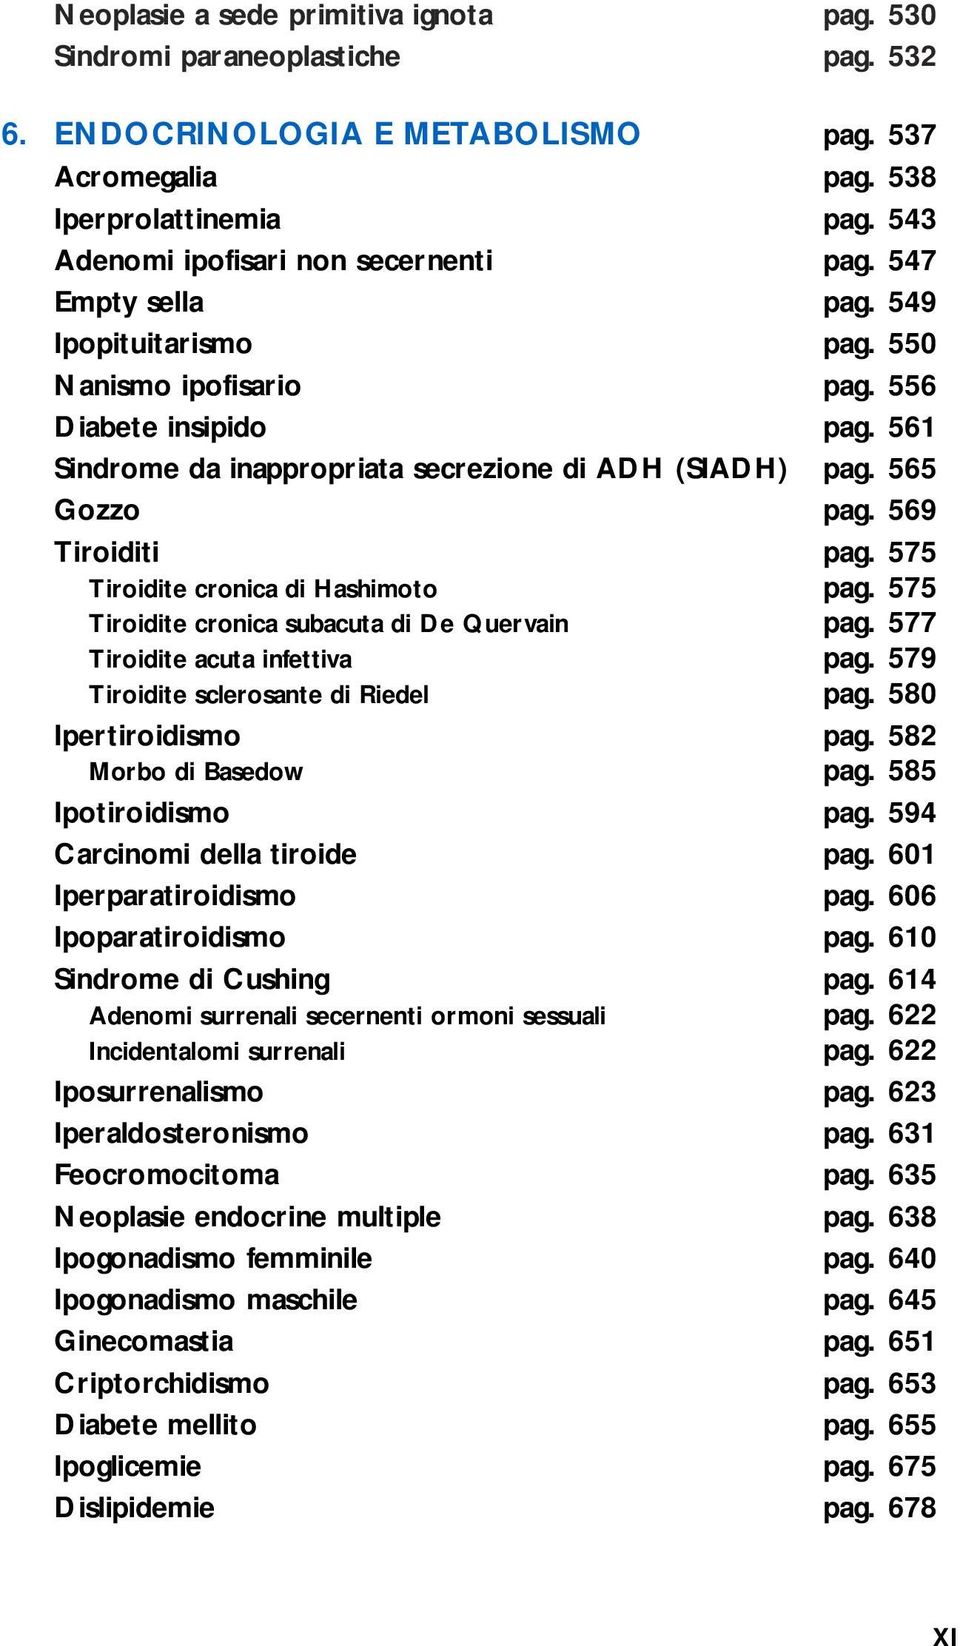 561 Sindrome da inappropriata secrezione di ADH (SIADH) pag. 565 Gozzo pag. 569 Tiroiditi pag. 575 Tiroidite cronica di Hashimoto pag. 575 Tiroidite cronica subacuta di De Quervain pag.